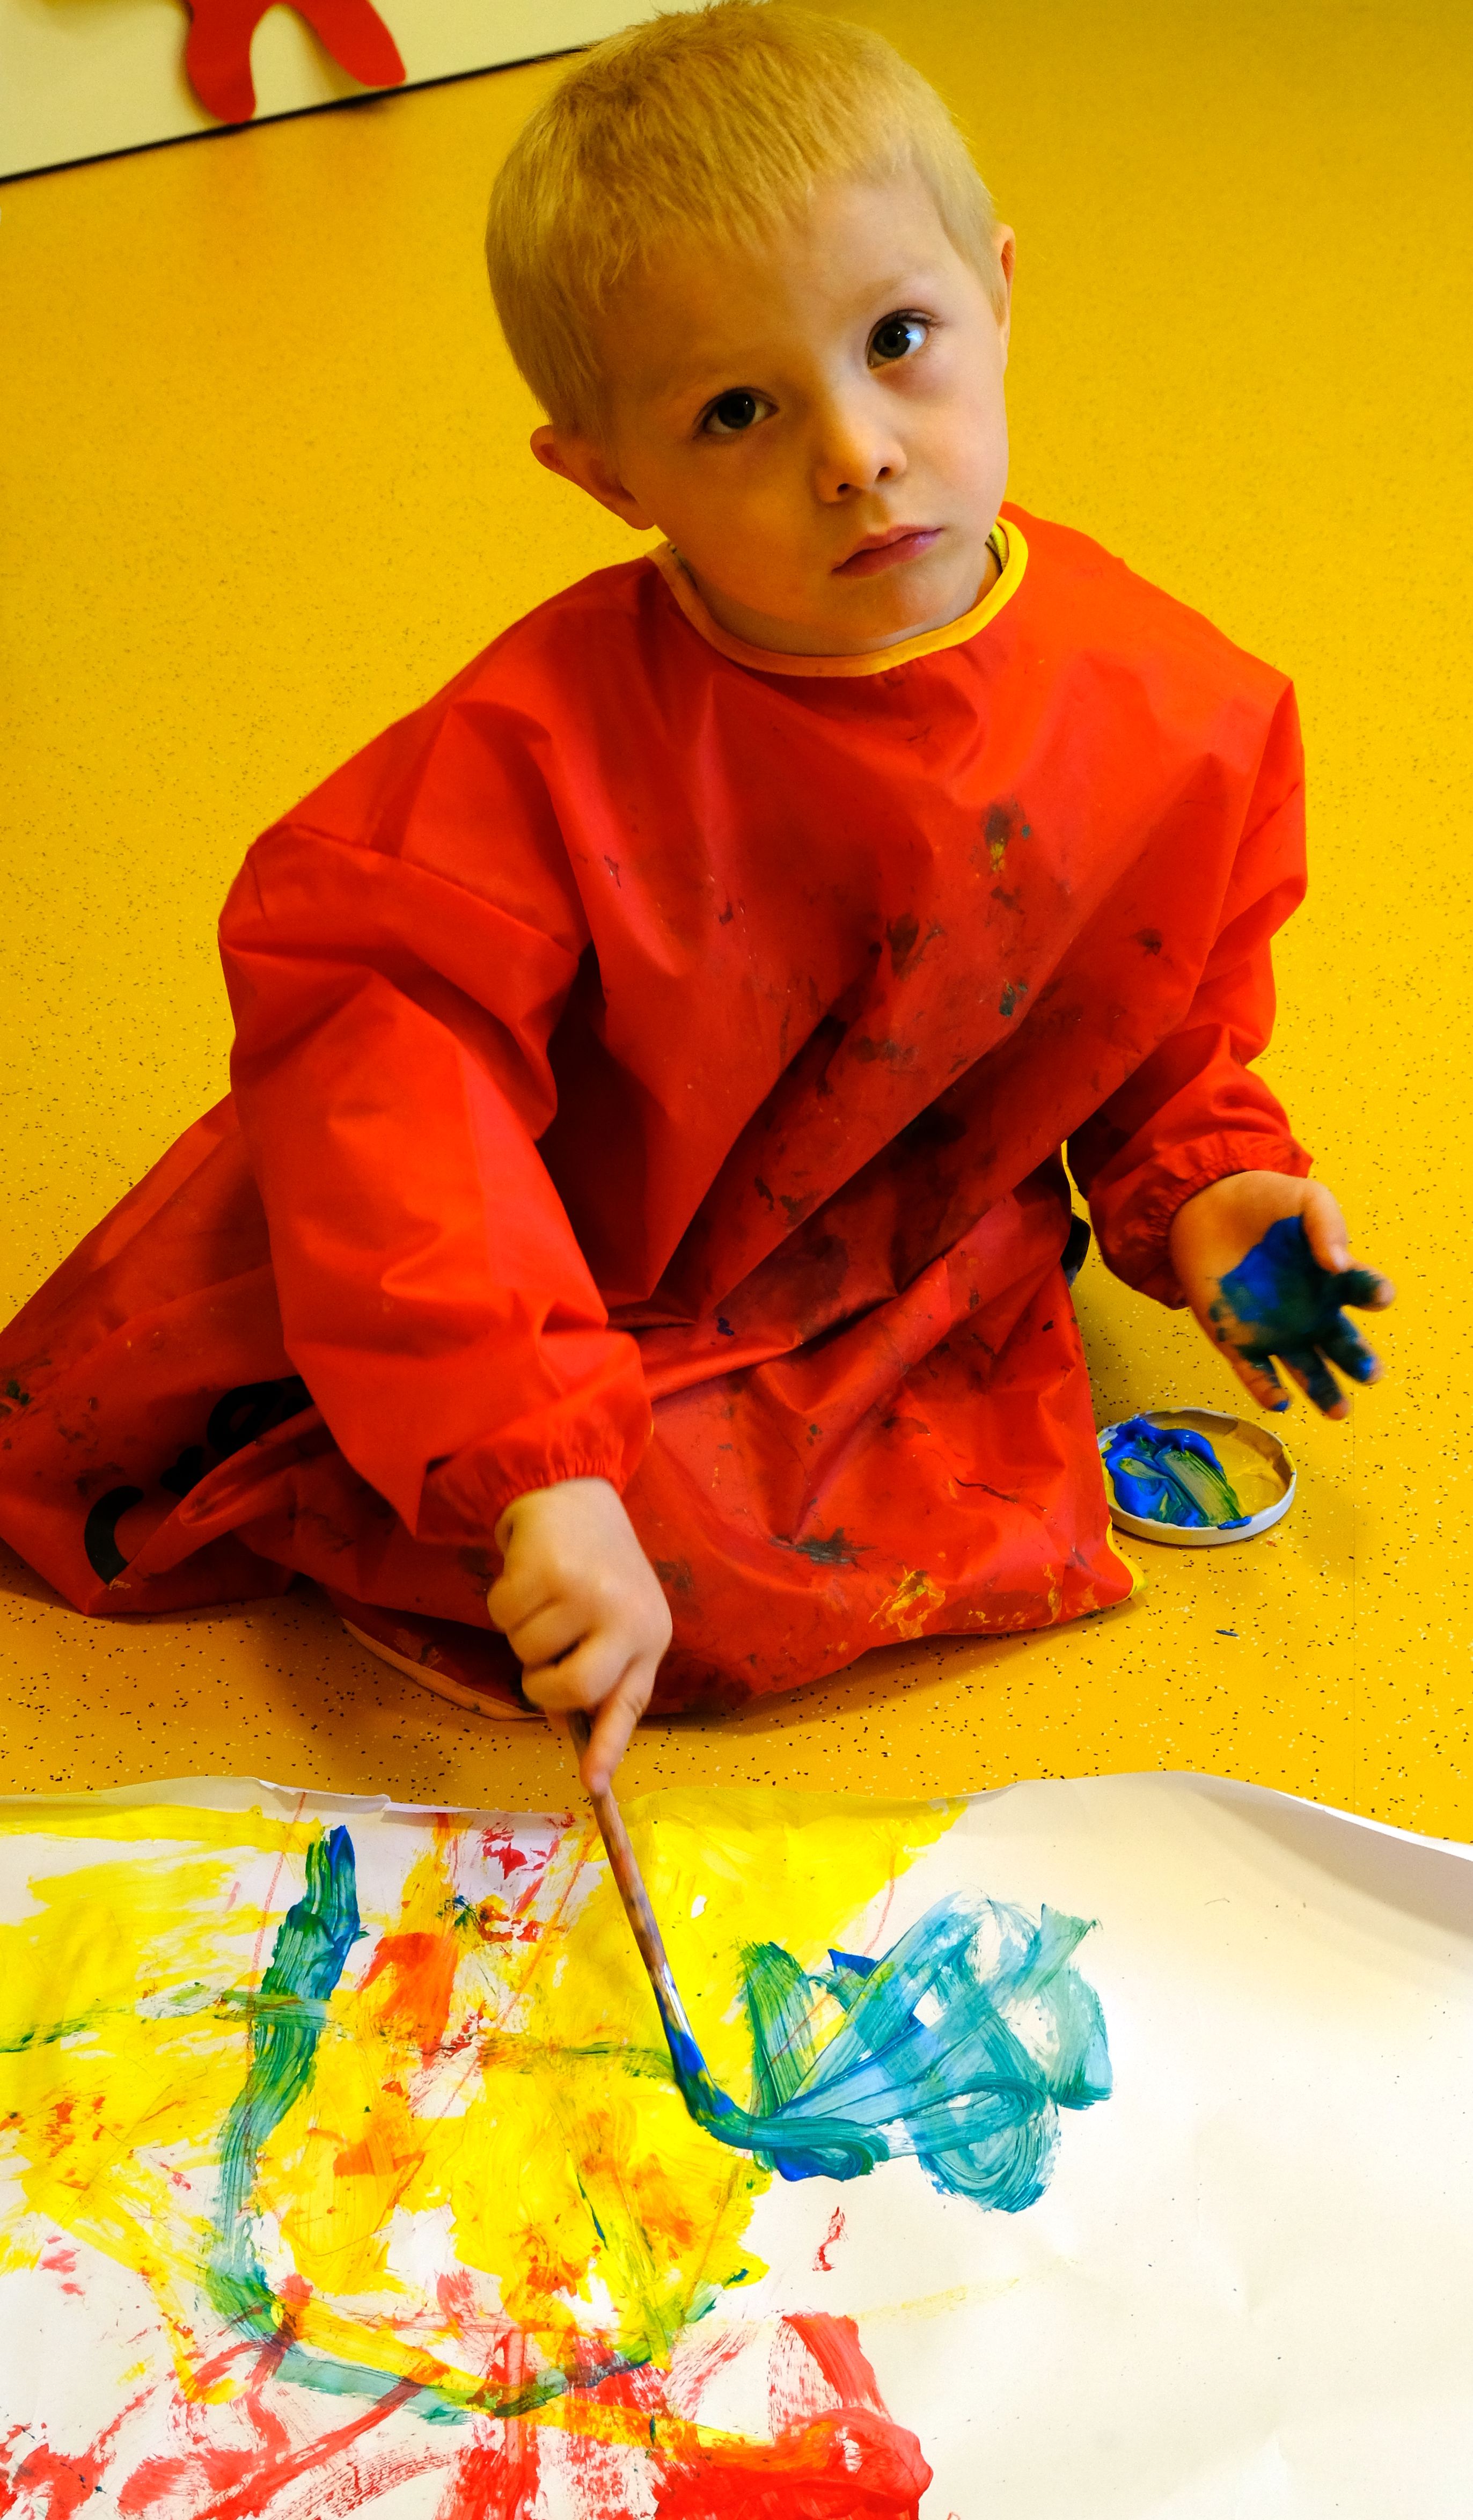 Foto: Ein Junge beim Malen mit bunten Farben